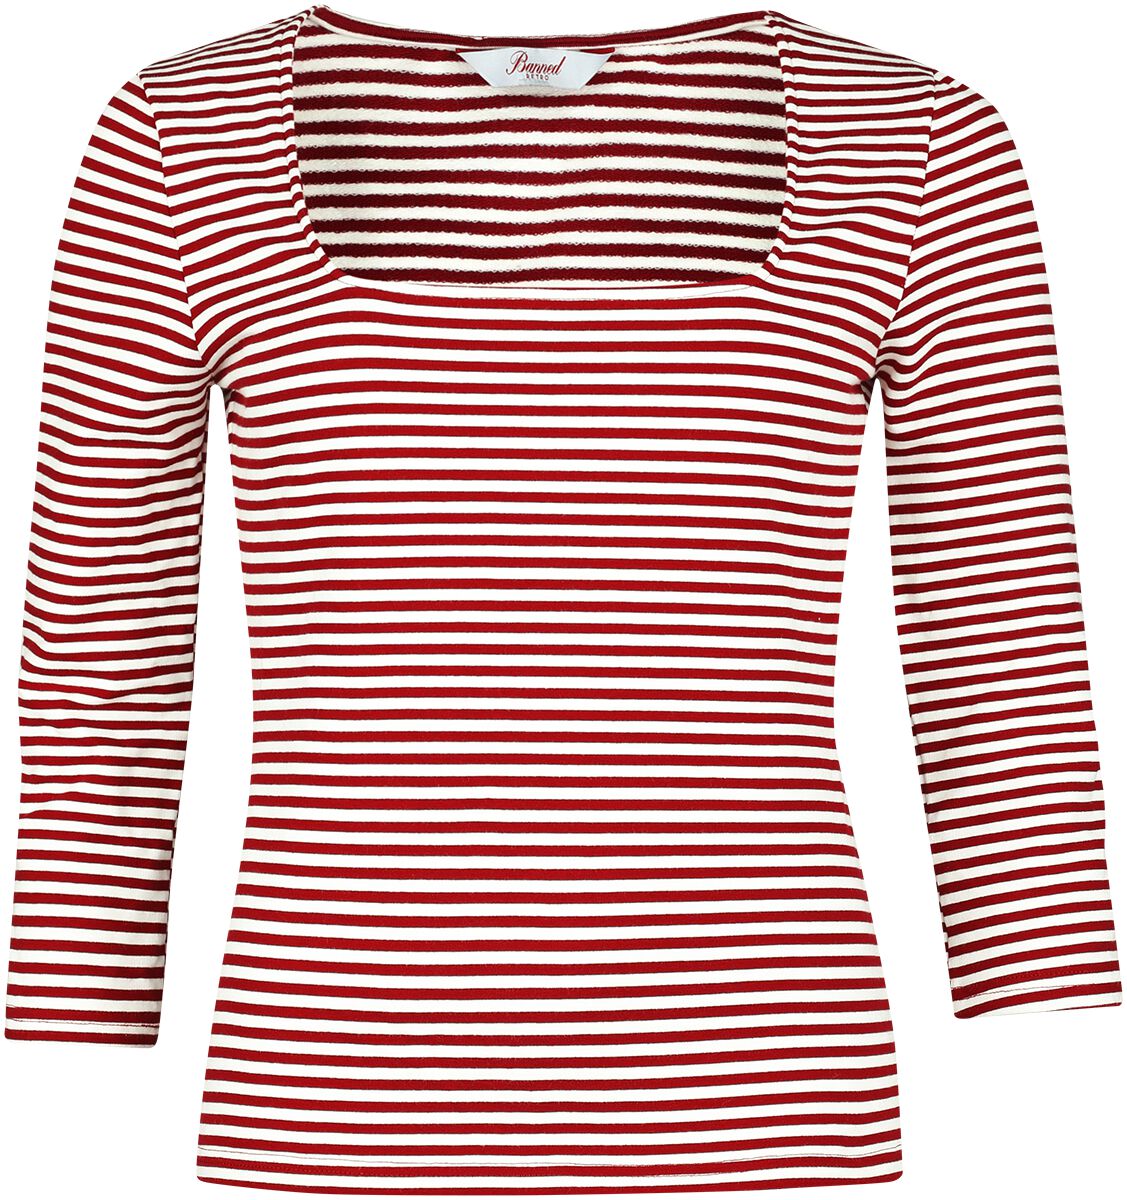 Banned Retro Langarmshirt - Stripe & Square Top - S bis 4XL - für Damen - Größe 4XL - rot/weiß